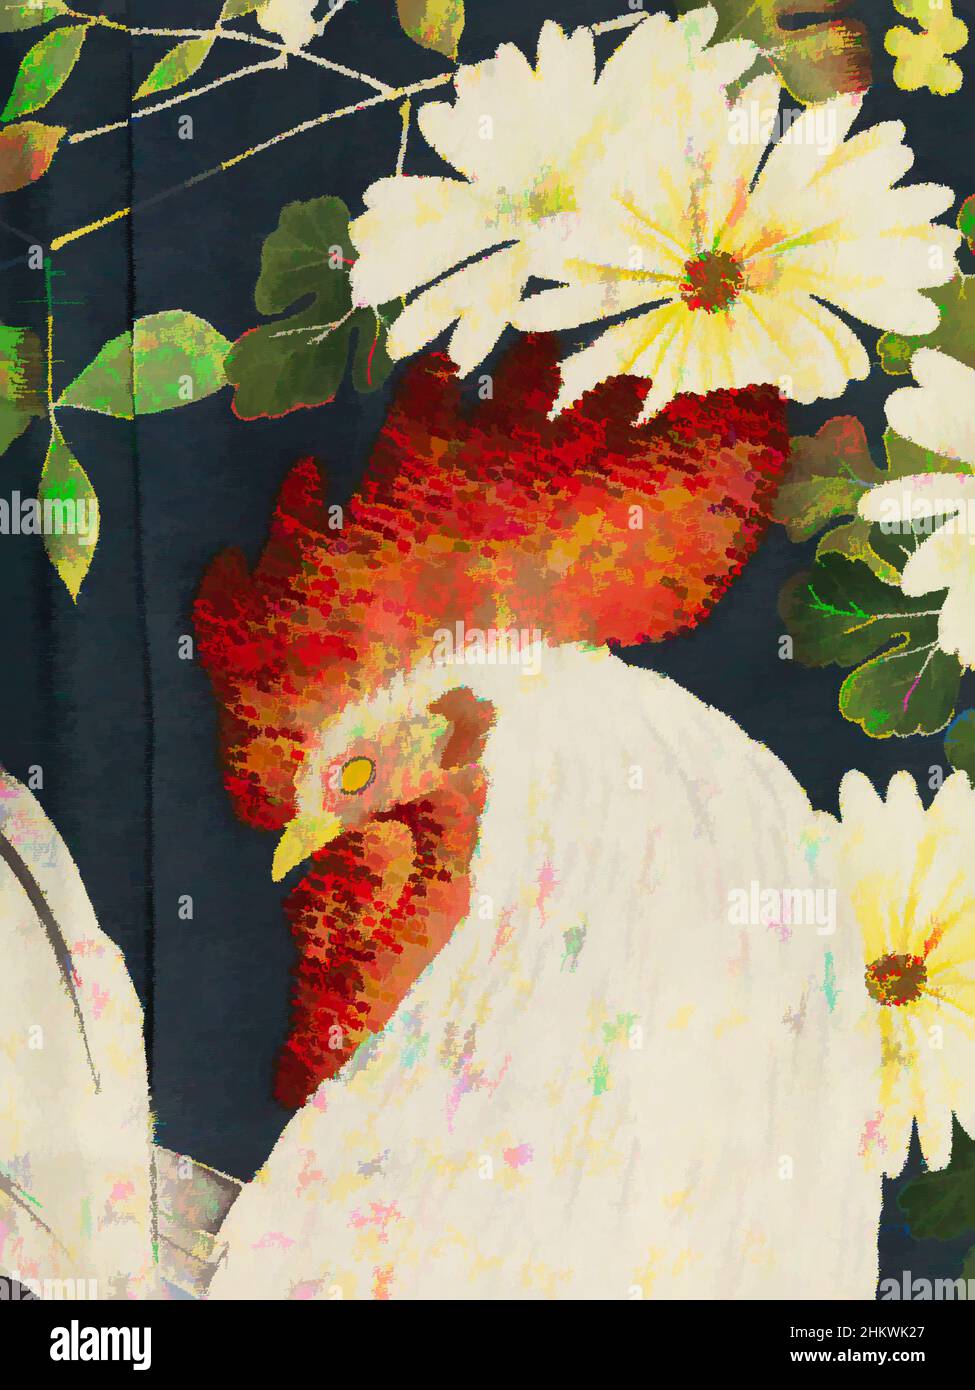 Arte ispirata al kimono femminile decorato con polli e cockerel, Iro-tomesode con galli e galline, kimono femminile semi-formale colorato (iro-tomesode), con una decorazione all'interno e all'esterno dei pannelli frontali di galline e cockerelle con crisantemi e nandina domestica (, opere classiche modernizzate da Artotop con un tuffo di modernità. Forme, colore e valore, impatto visivo accattivante sulle emozioni artistiche attraverso la libertà delle opere d'arte in modo contemporaneo. Un messaggio senza tempo che persegue una nuova direzione selvaggiamente creativa. Artisti che si rivolgono al supporto digitale e creano l'NFT Artotop Foto Stock